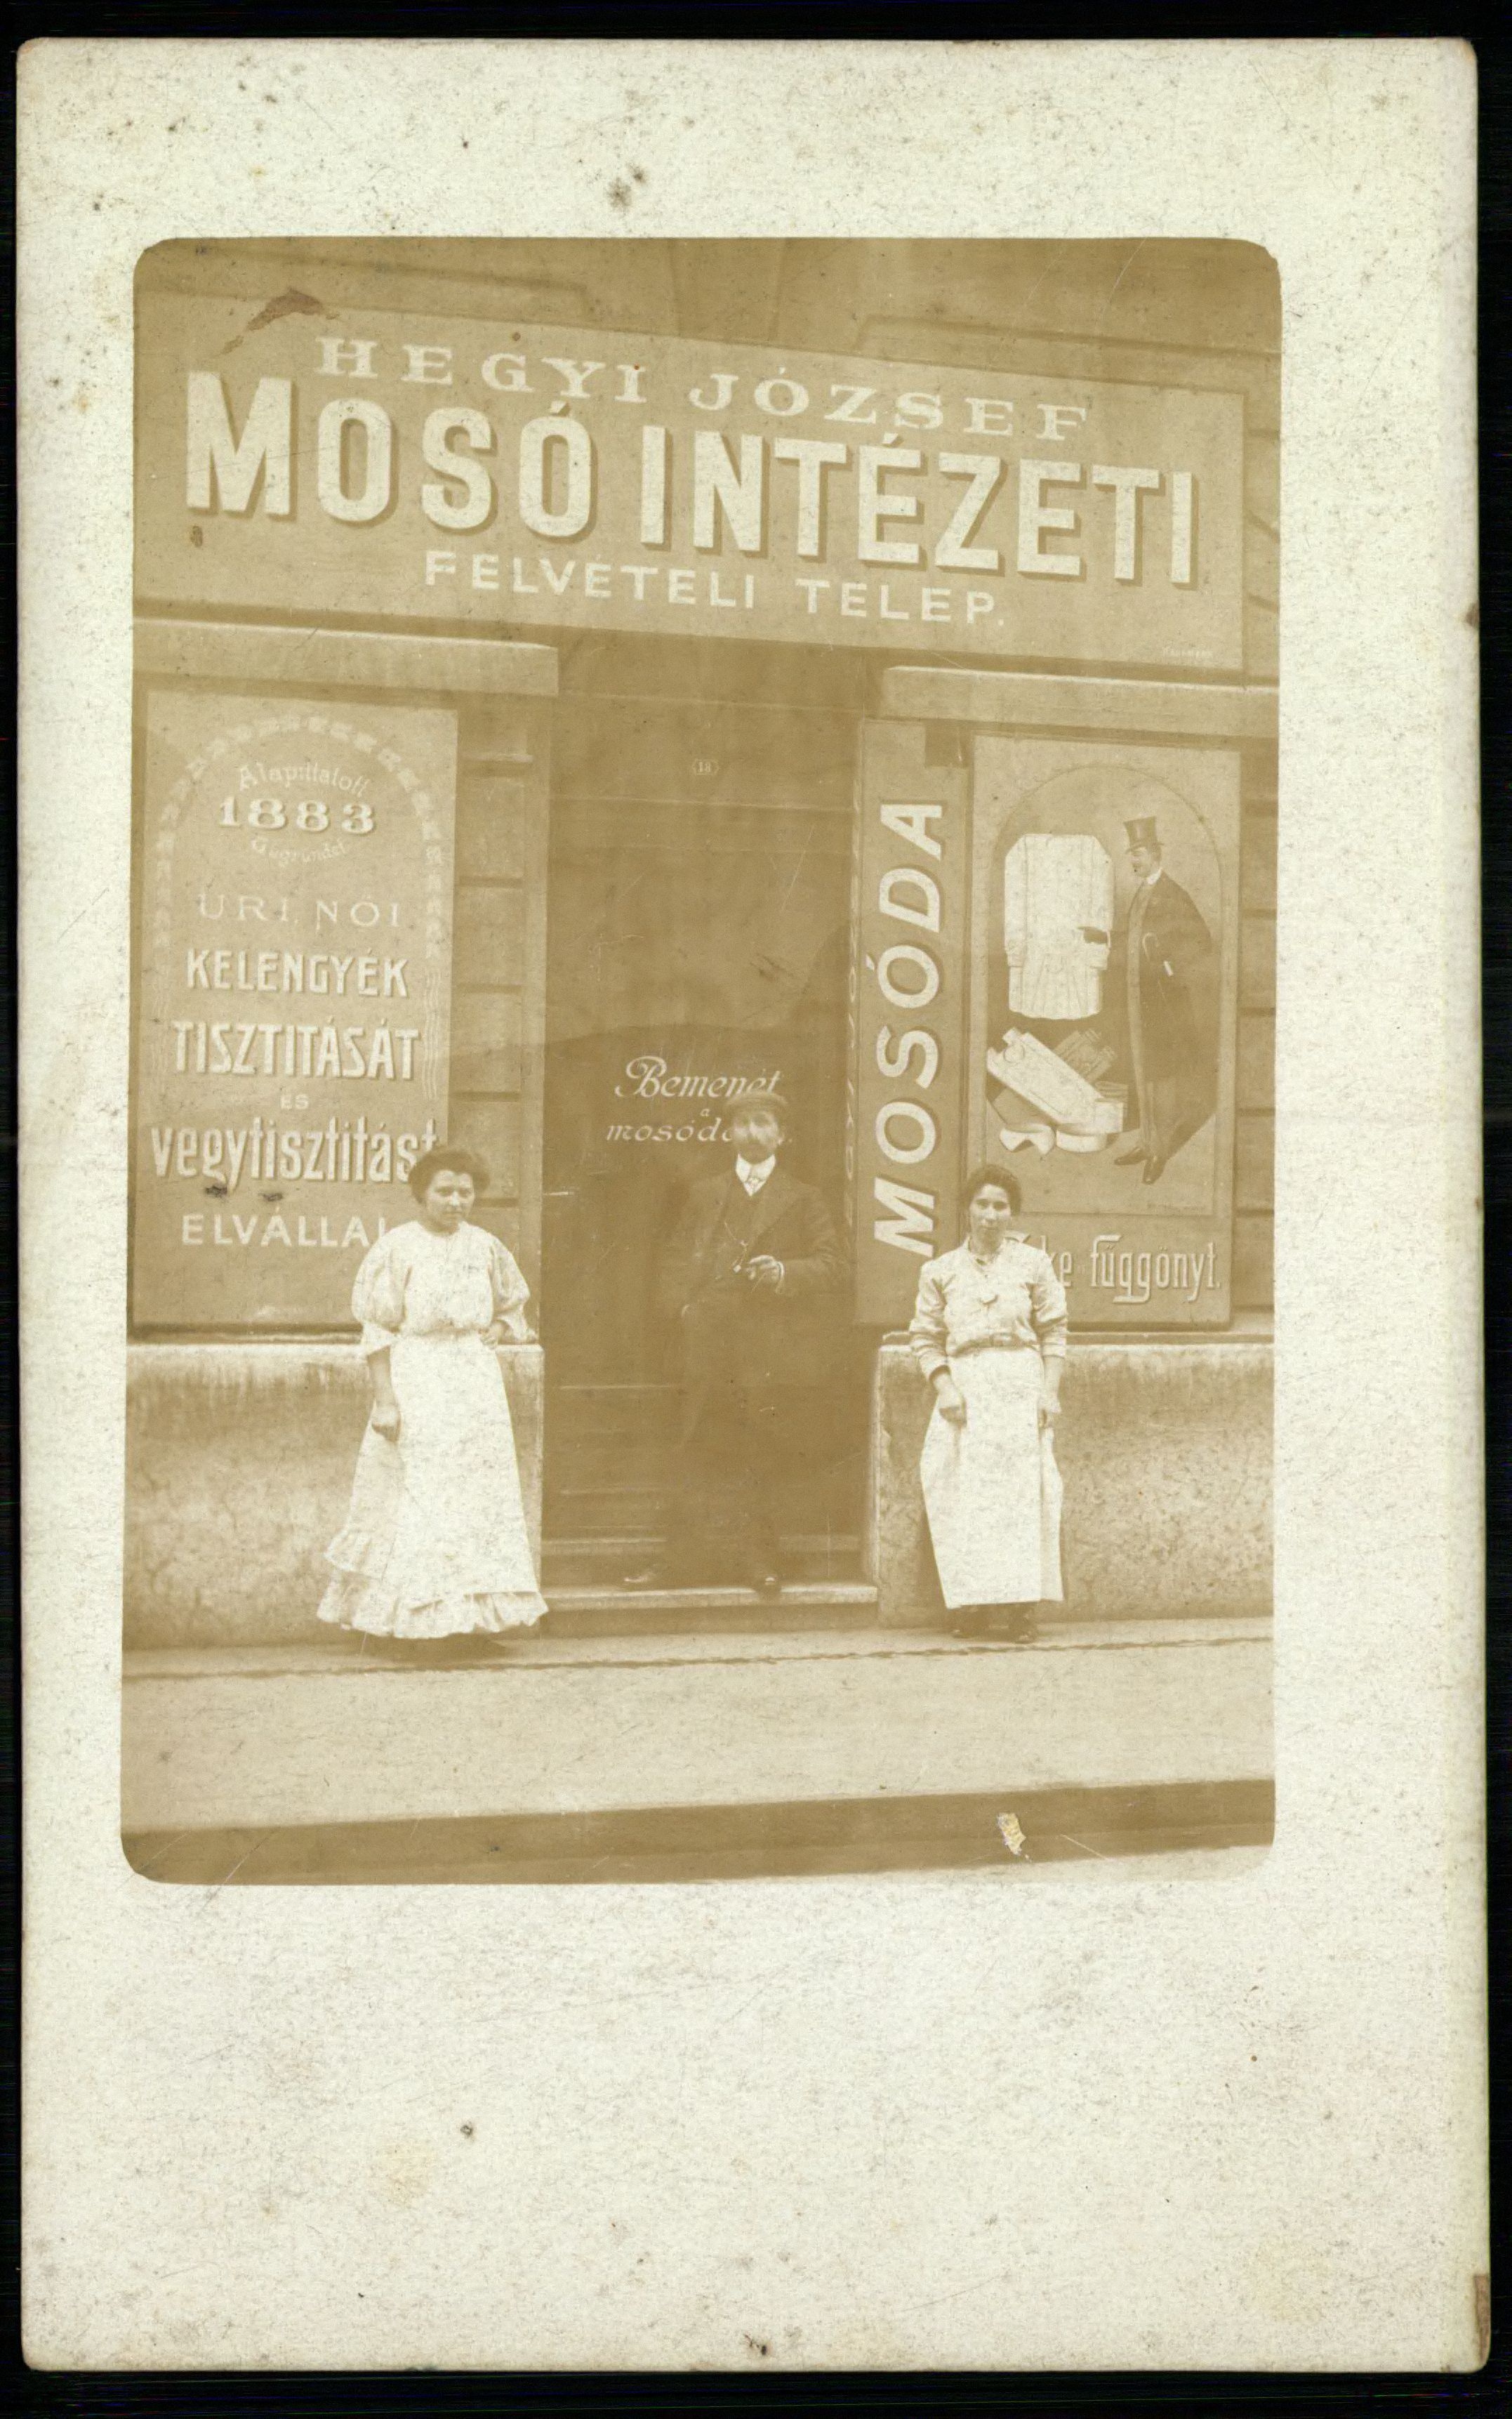 Hegyi József mosóintézeti felvételi telep (Magyar Kereskedelmi és Vendéglátóipari Múzeum CC BY-NC-ND)